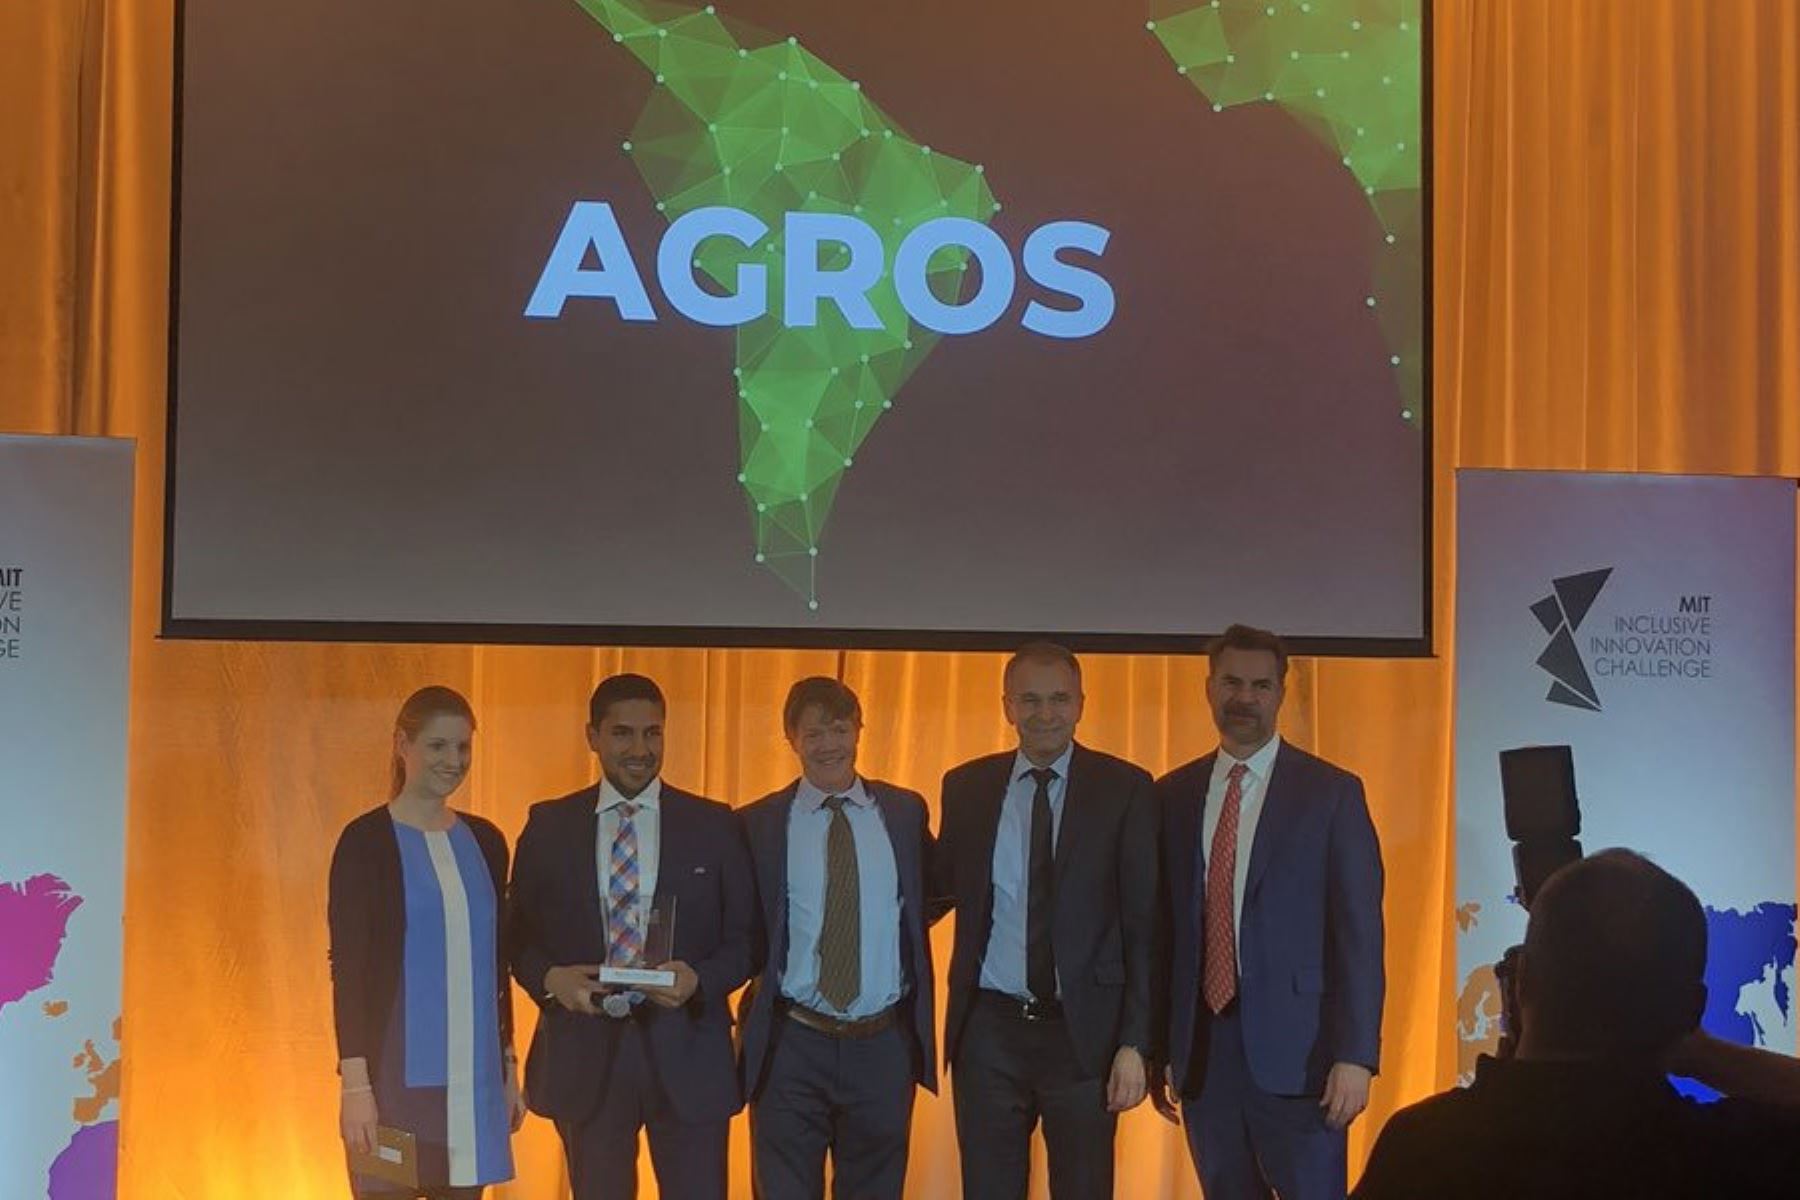 Robinson Lopez, CEO de Agros, dedicó este reconocimiento a los agricultores con los que trabaja. Foto: MIT